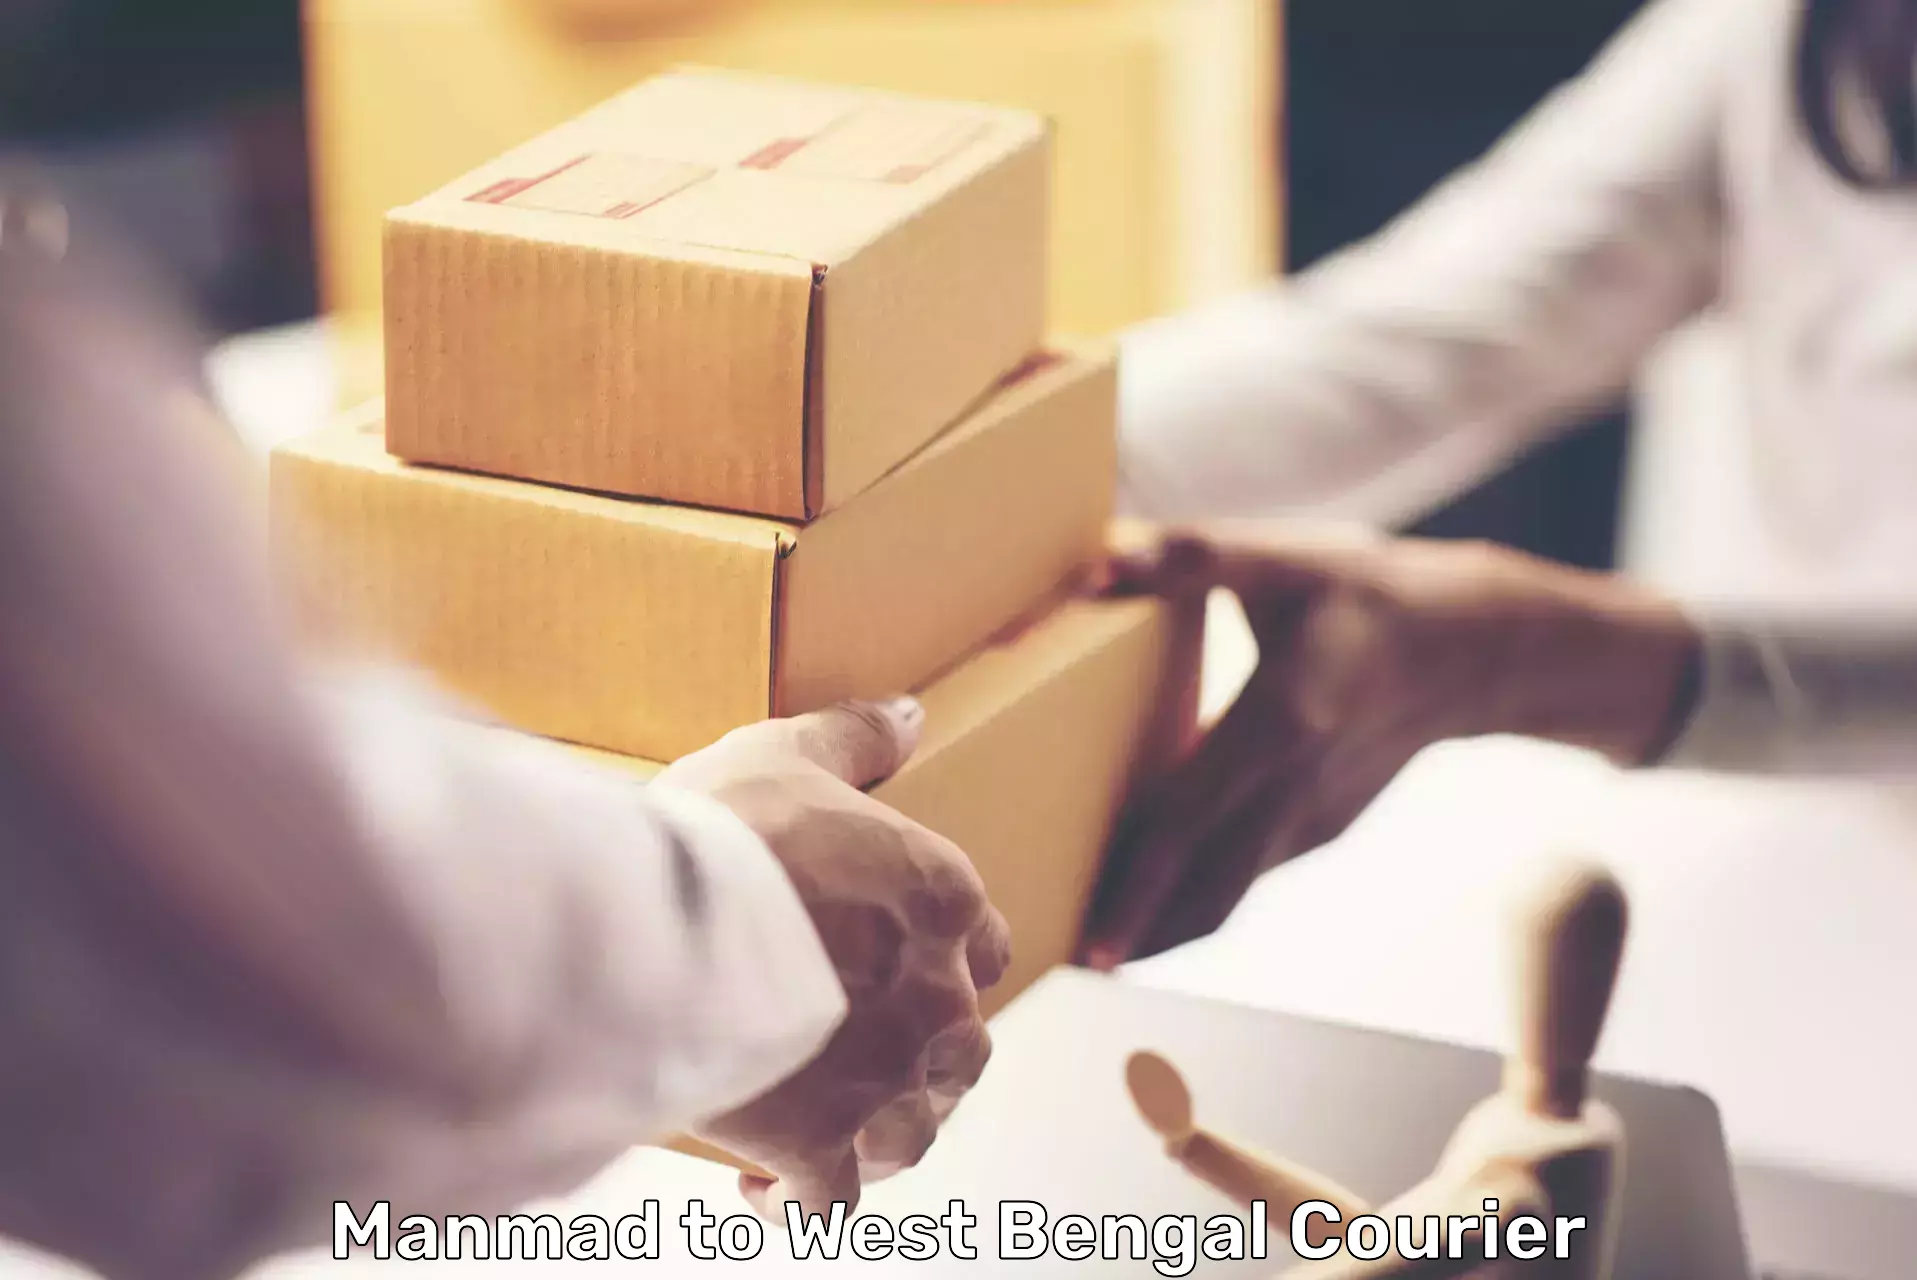 Budget-friendly shipping Manmad to Maheshtala